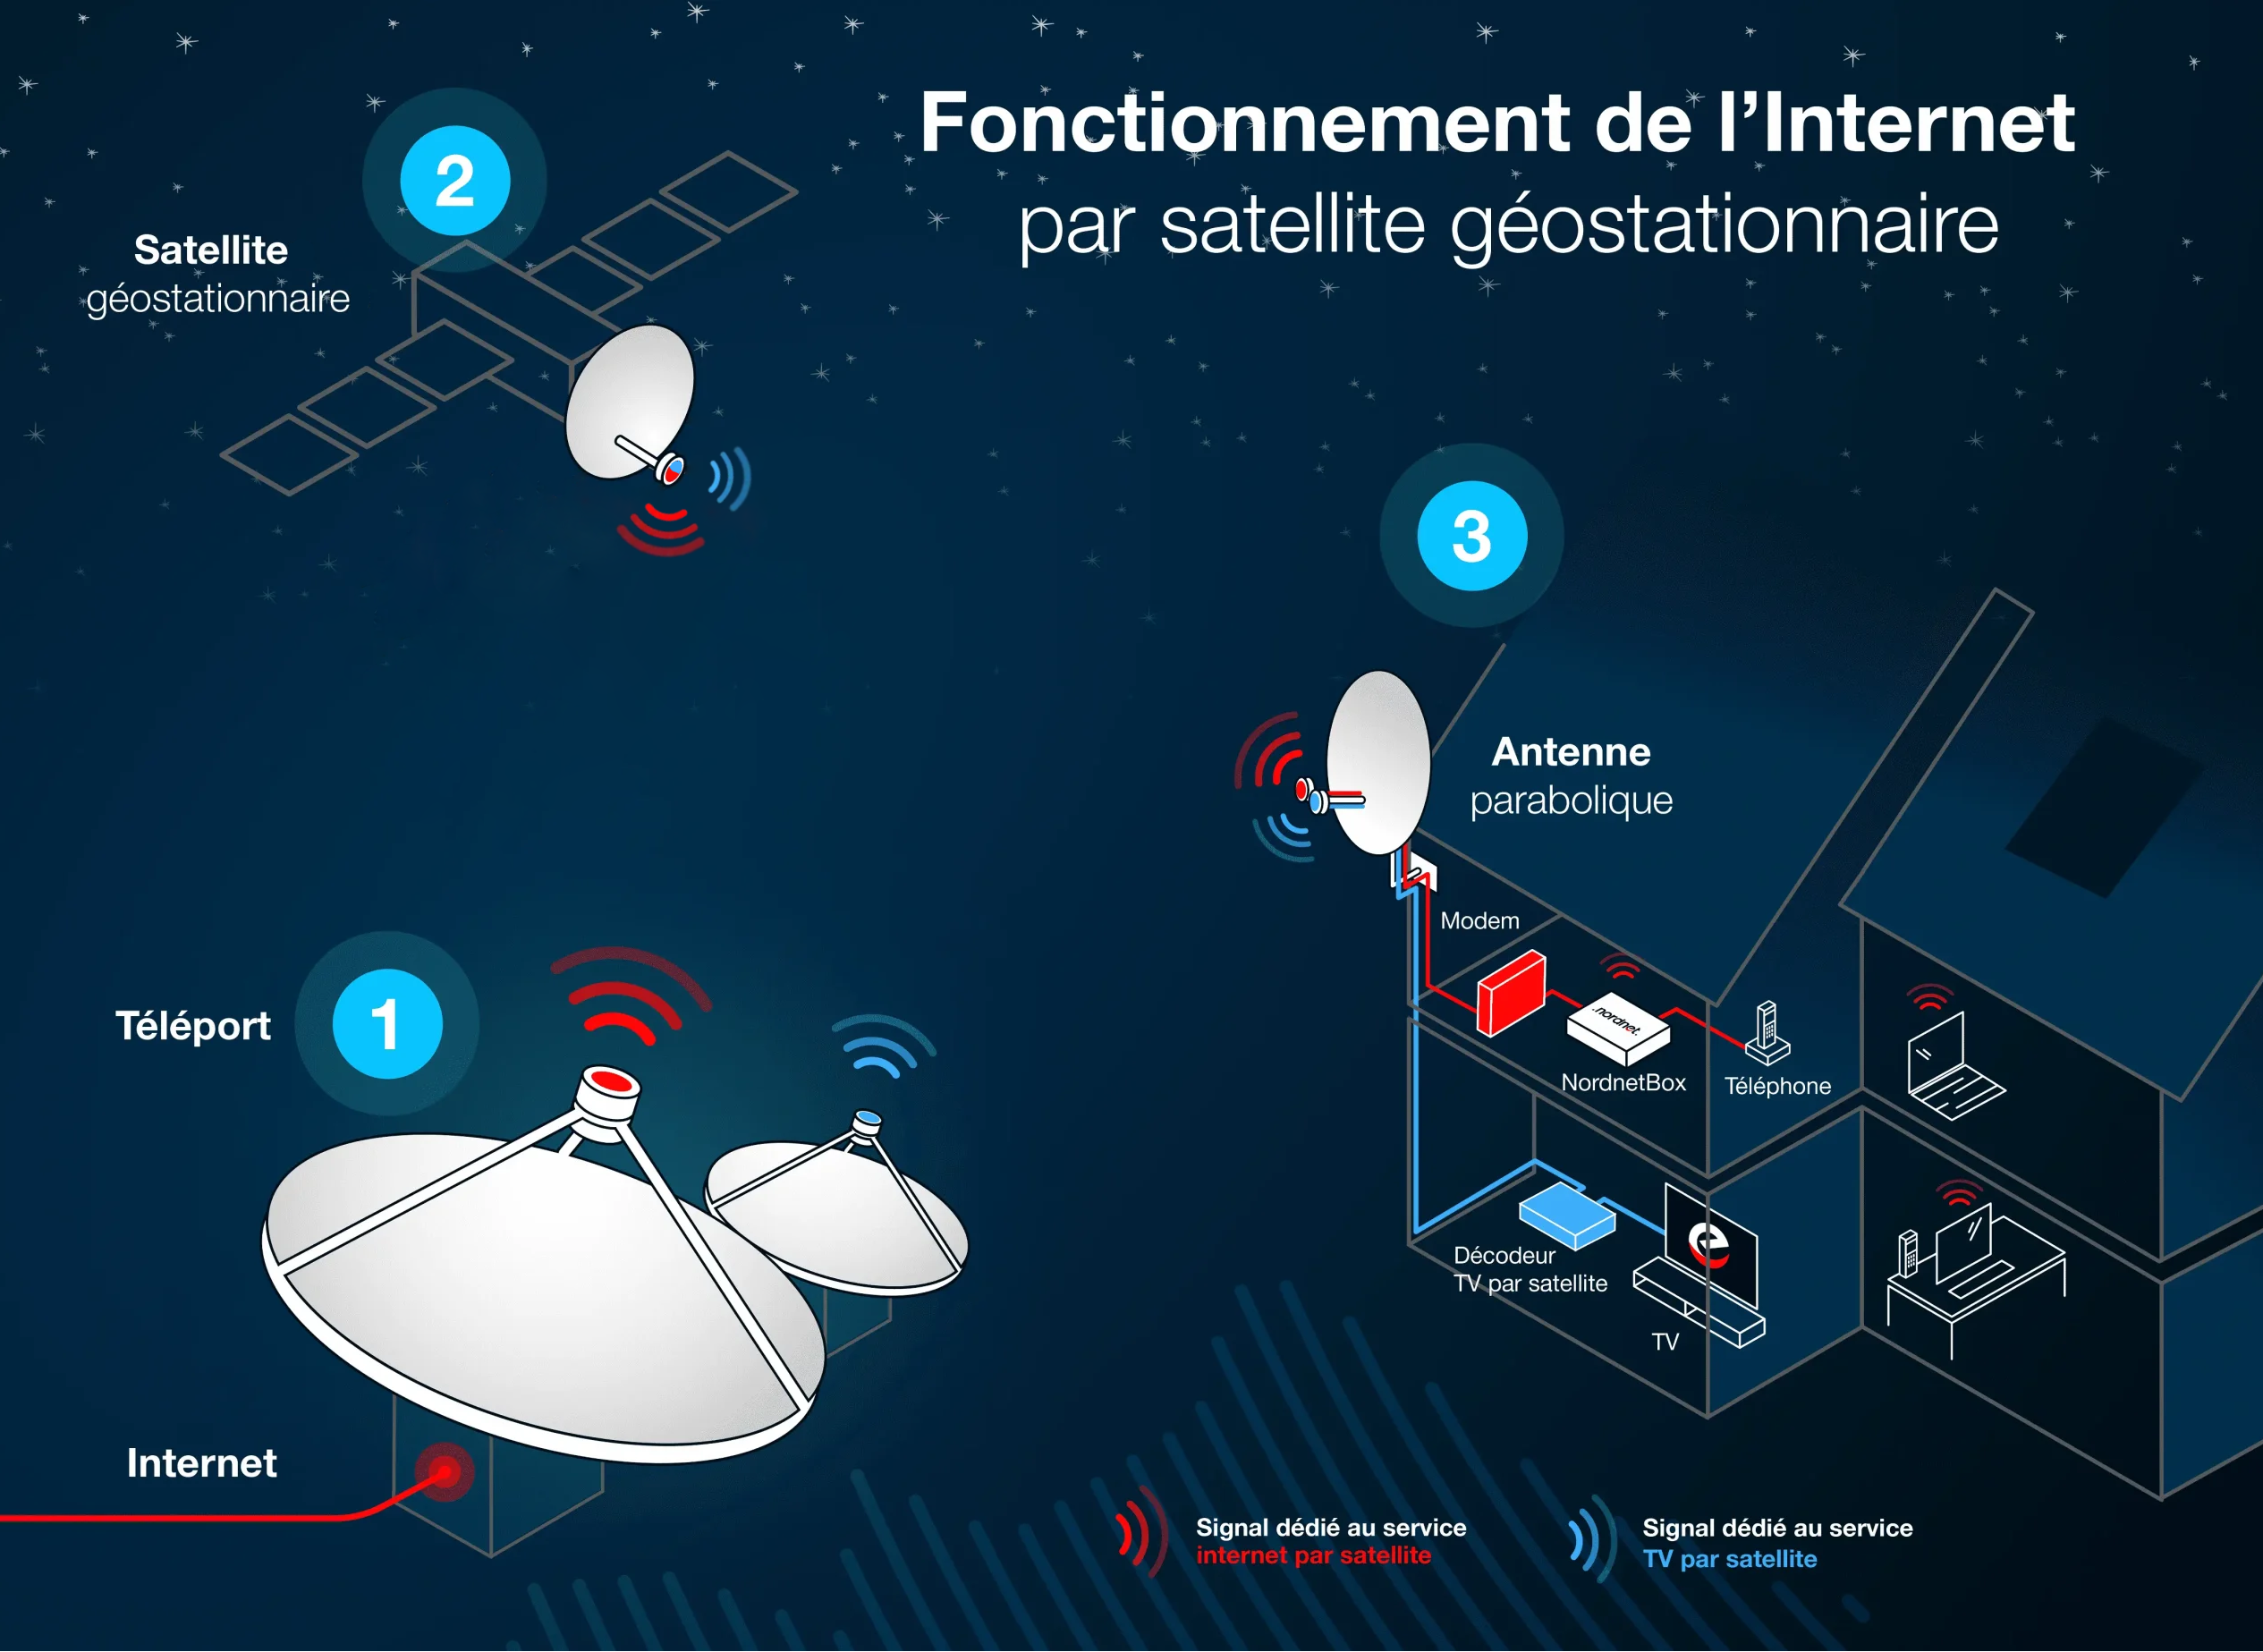 Internet par satellite, solution de connexion complémentaire. Schéma de fonctionnement de la technologie internet satellite pour tout comprendre